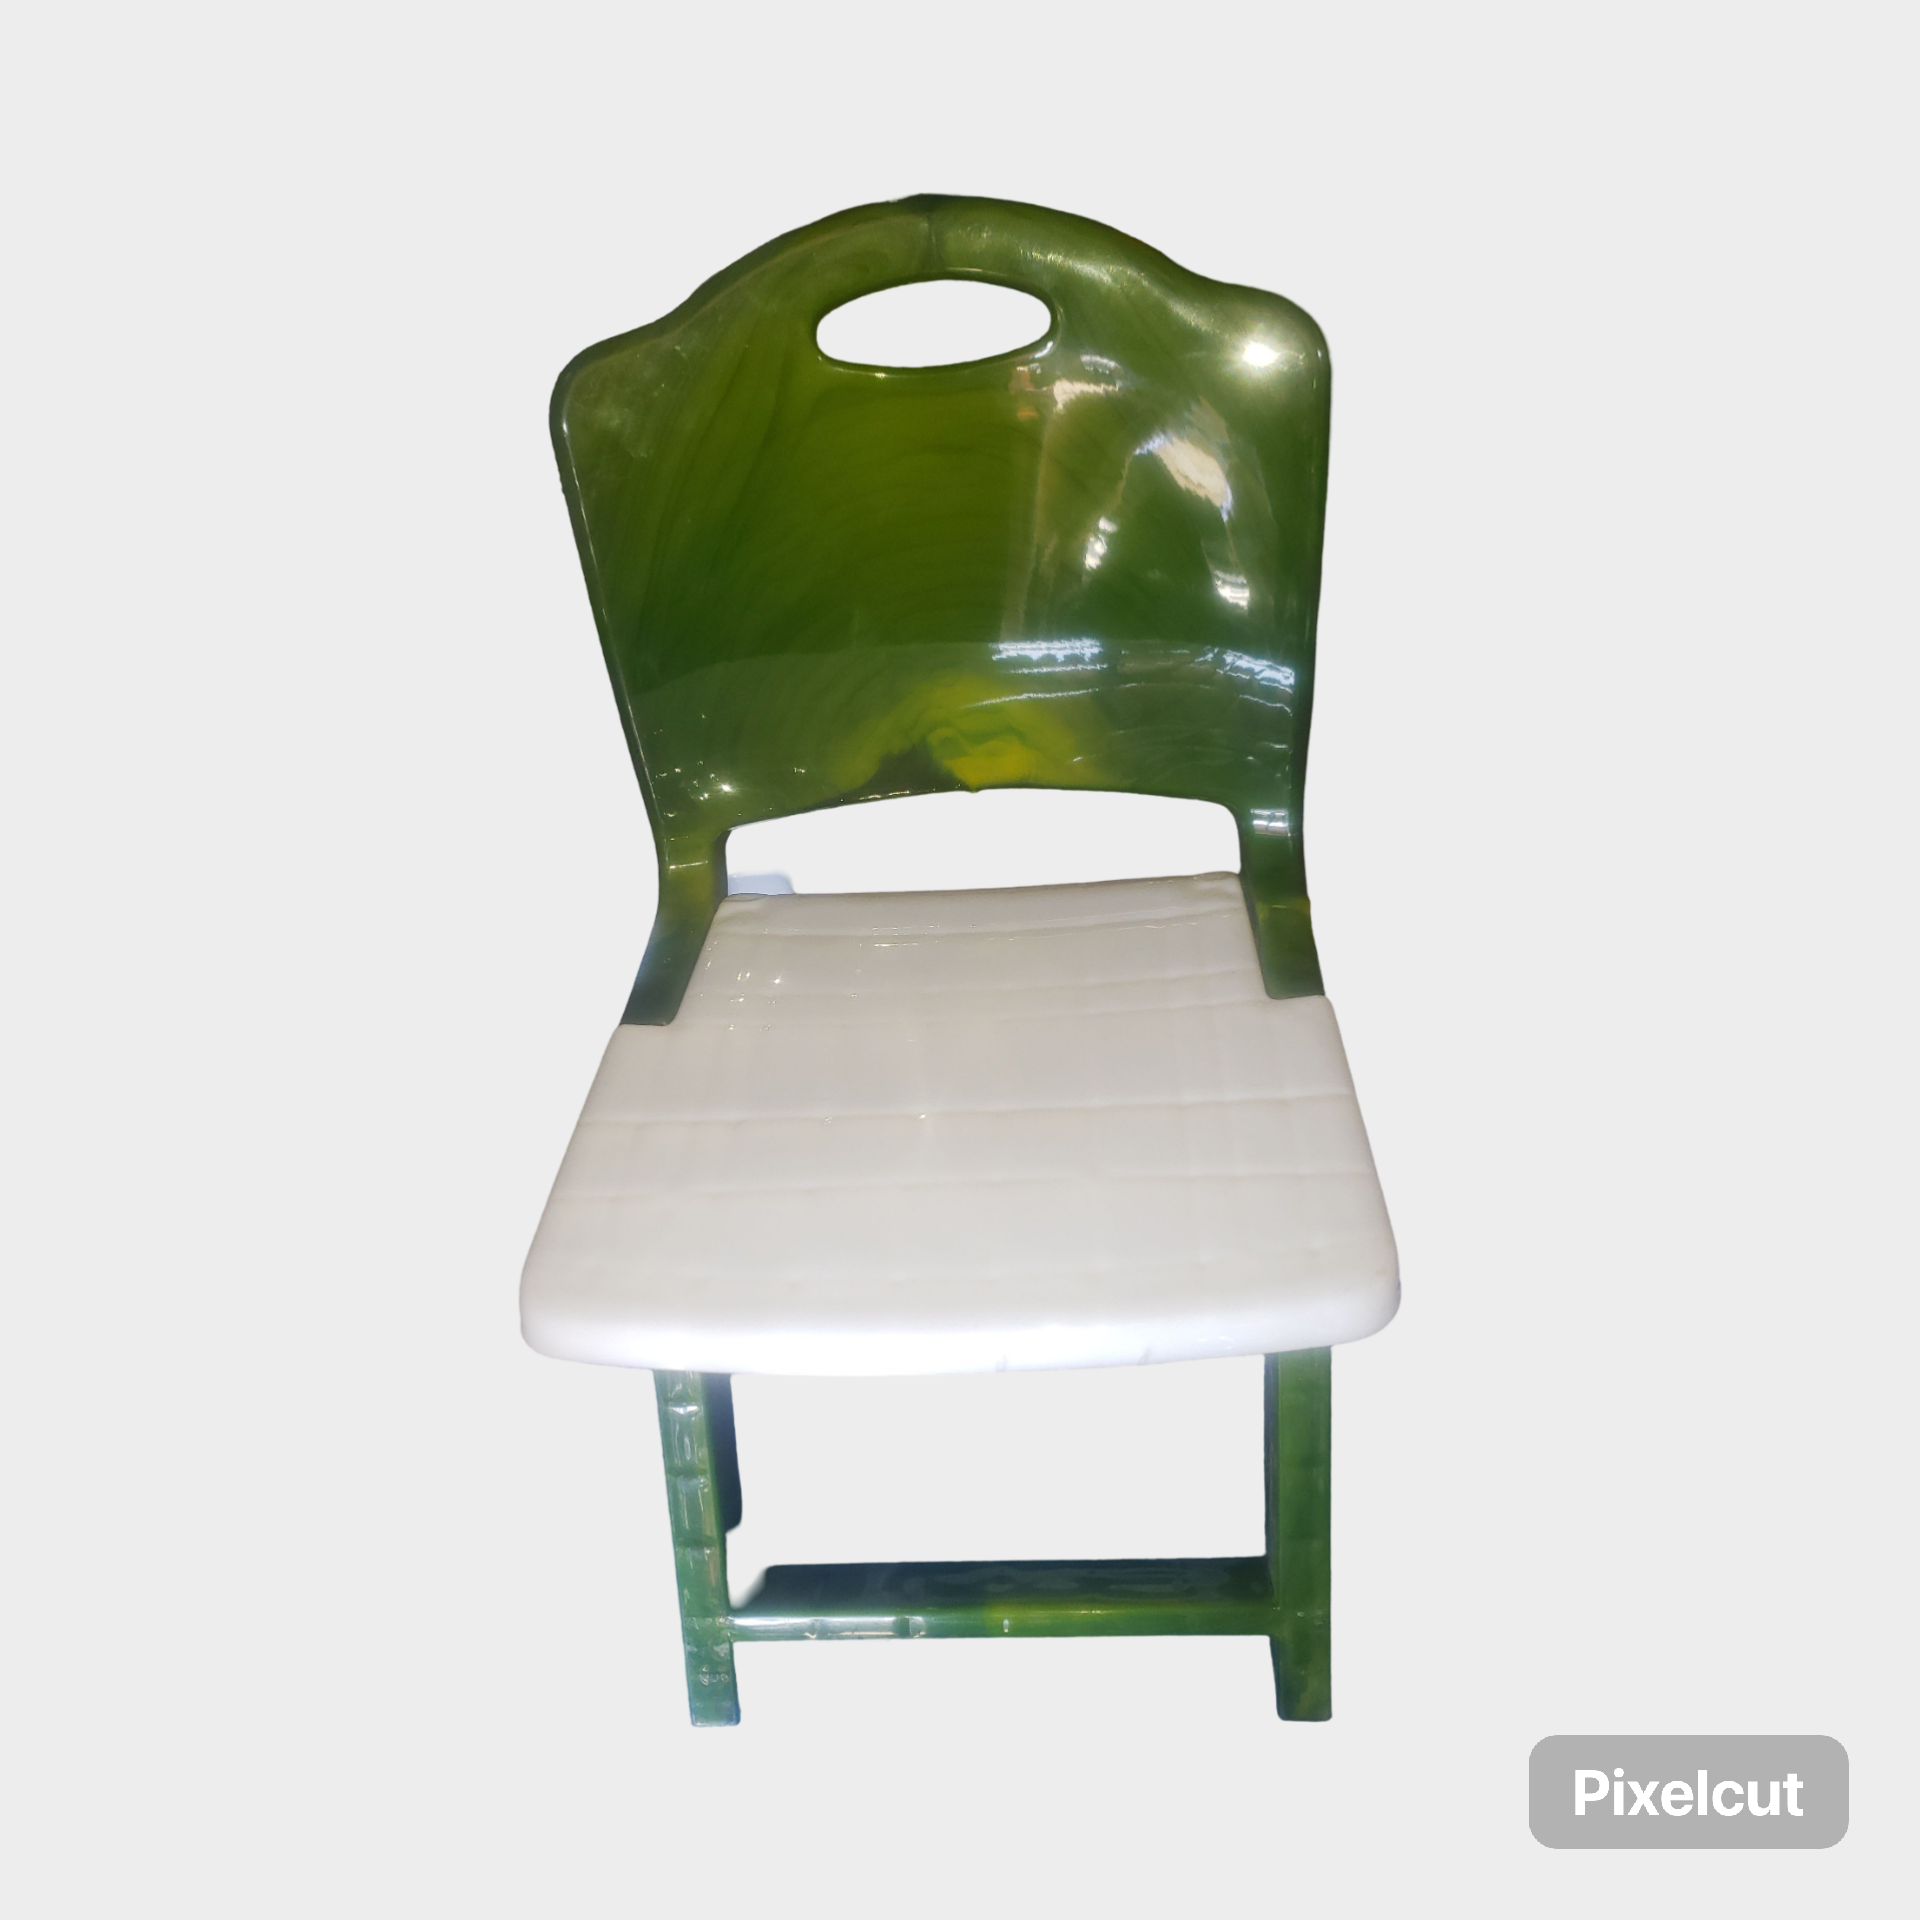 Foldable kids Plastic Chair / የልጆች ታጣፊ ወንበር